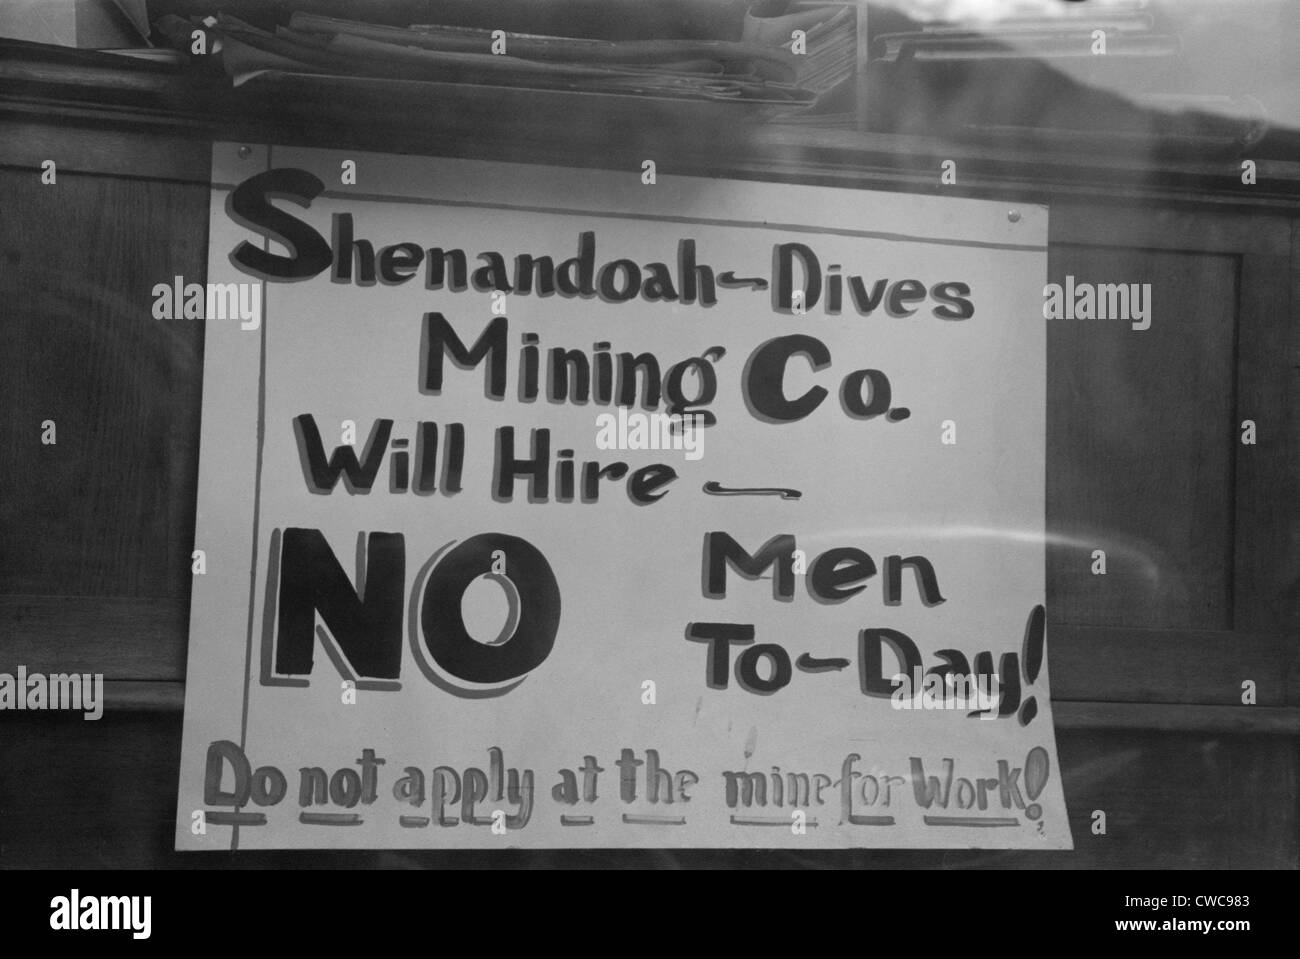 Nessun processo disponibile segno. 'Shenandoah-Dives Mining Co. Noleggio sarà NO agli uomini di oggi non si applicano alla miniera per lavoro Silverton Foto Stock